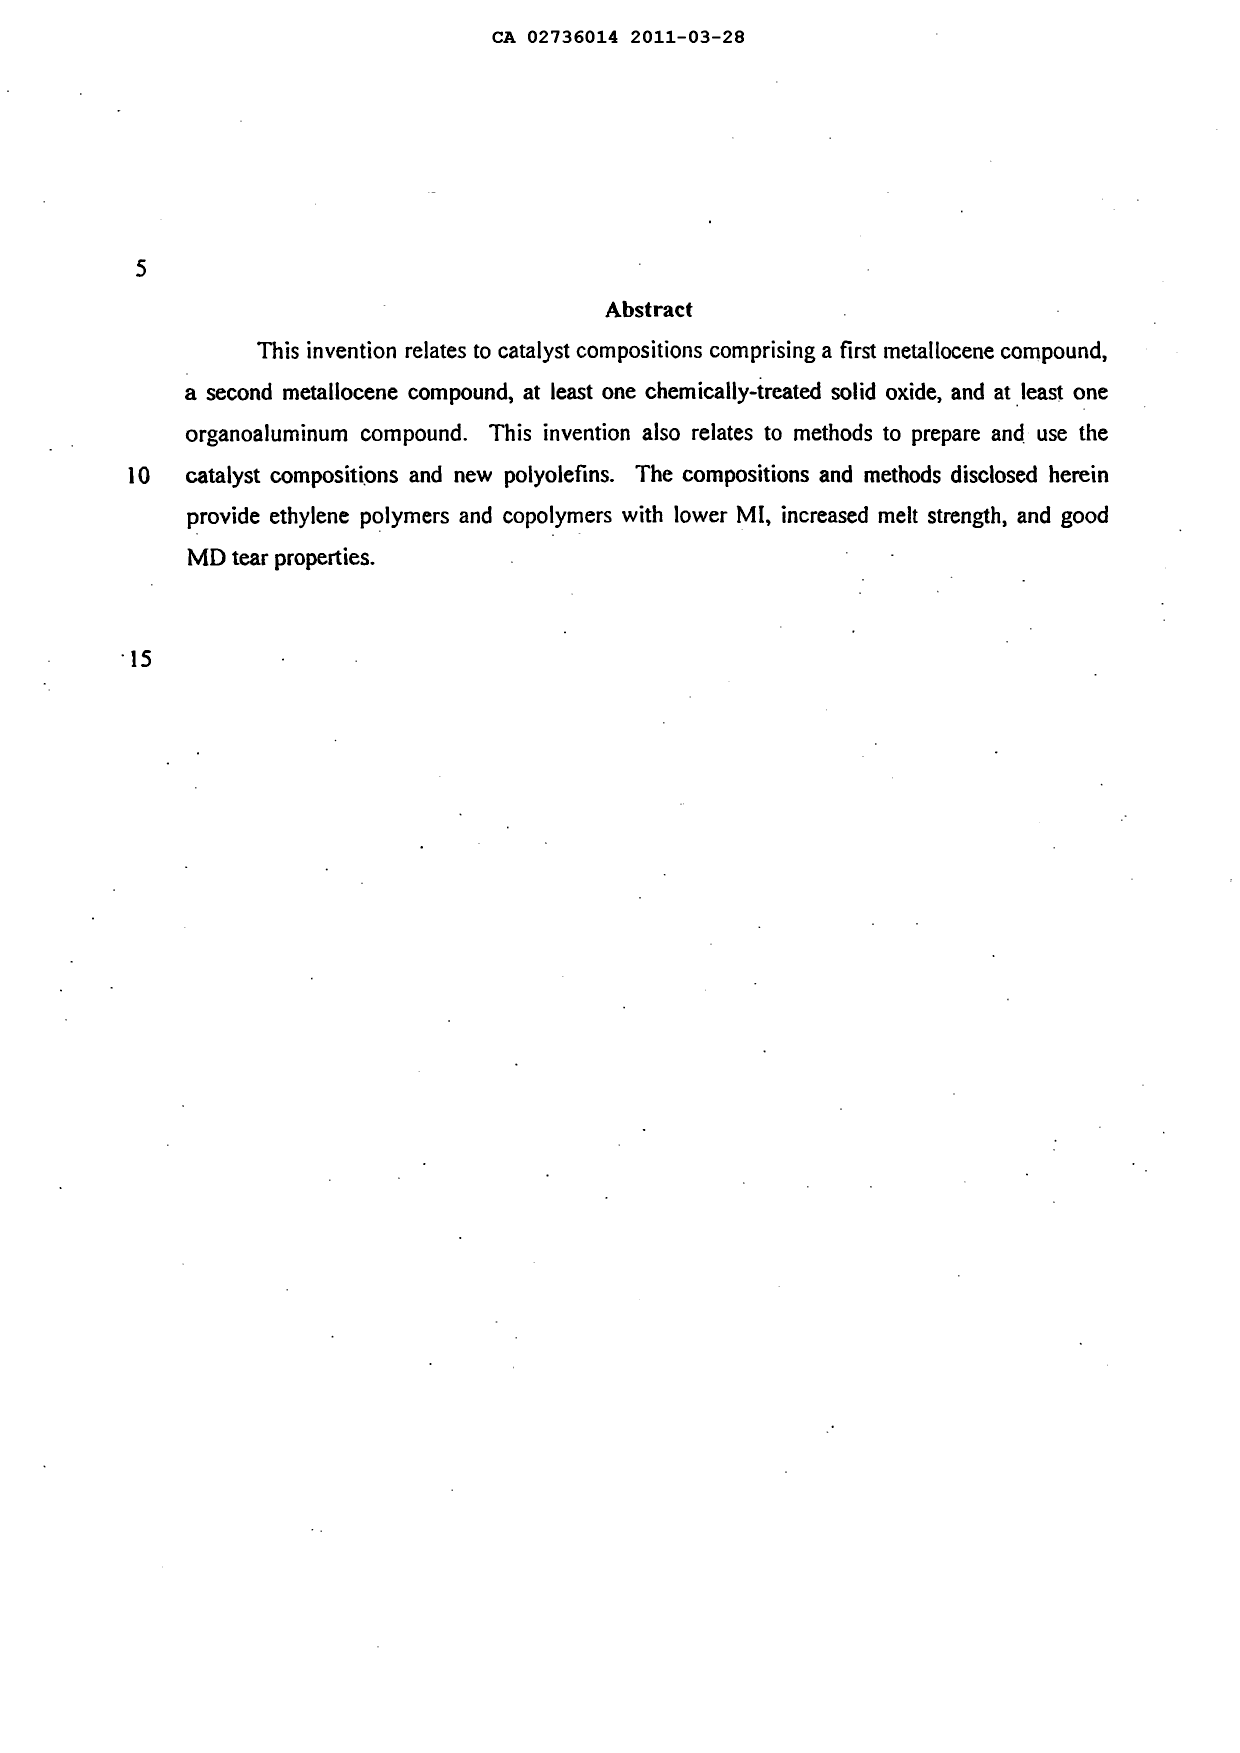 Document de brevet canadien 2736014. Abrégé 20110328. Image 1 de 1